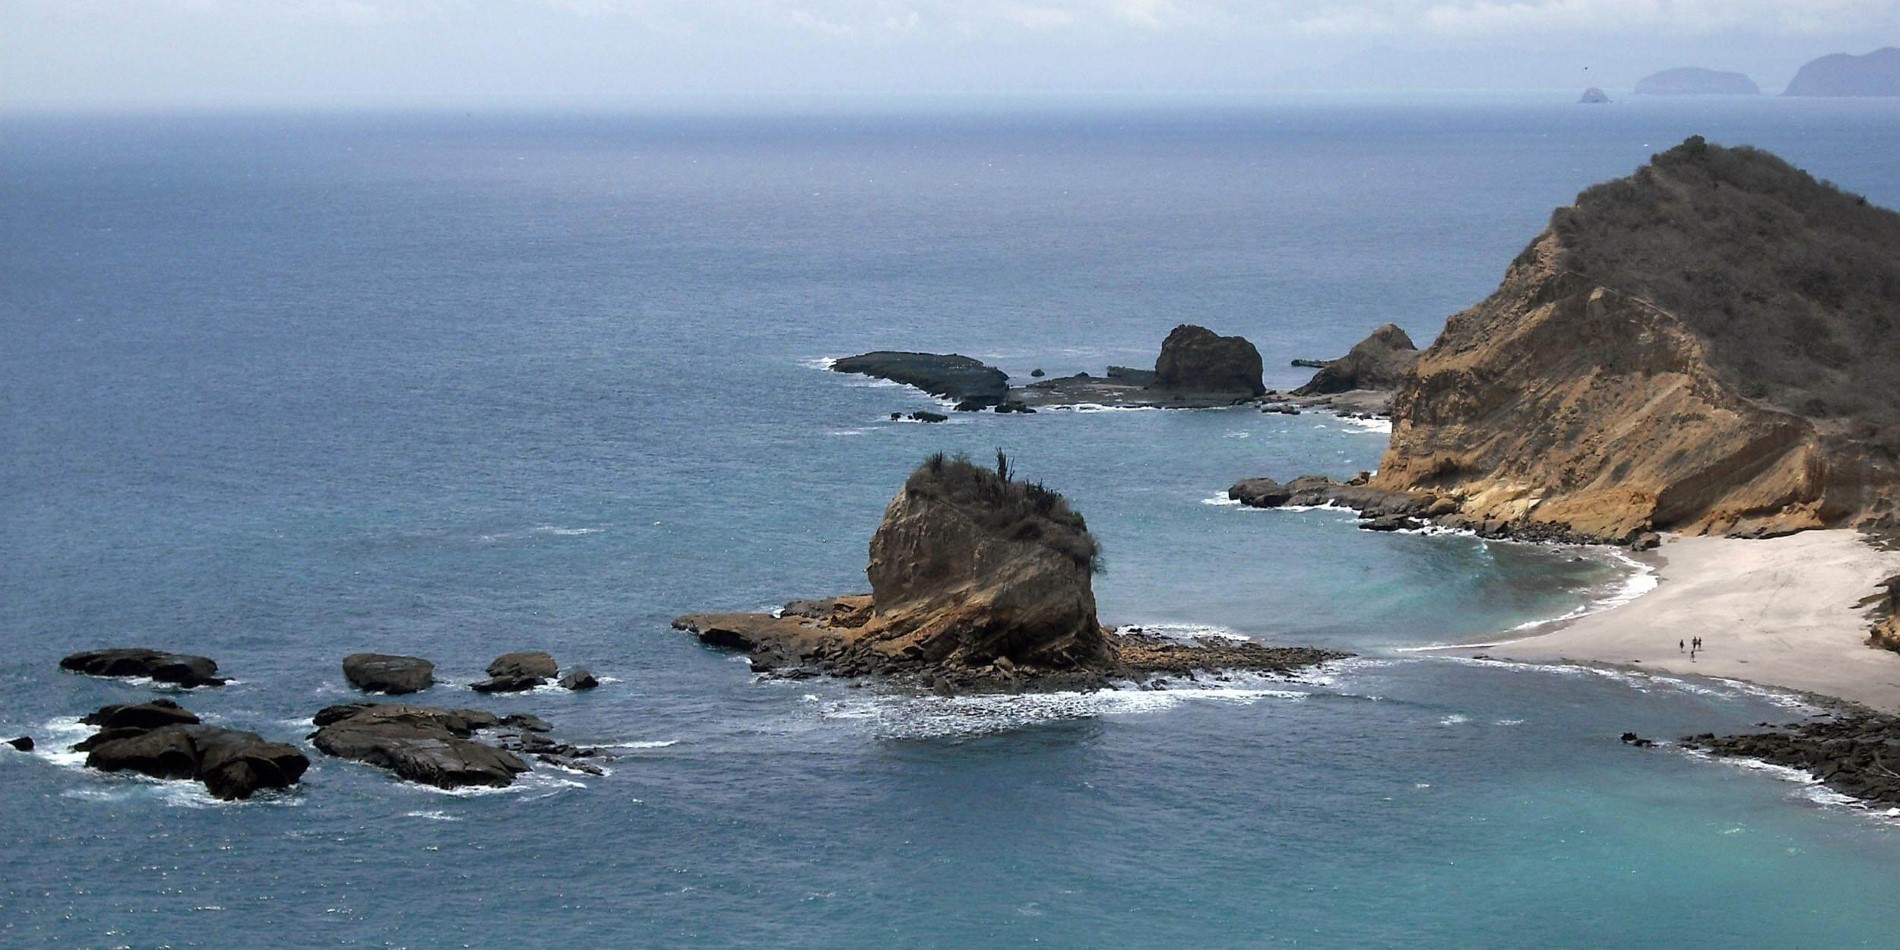 En steinete øy midt i en kropp av vann